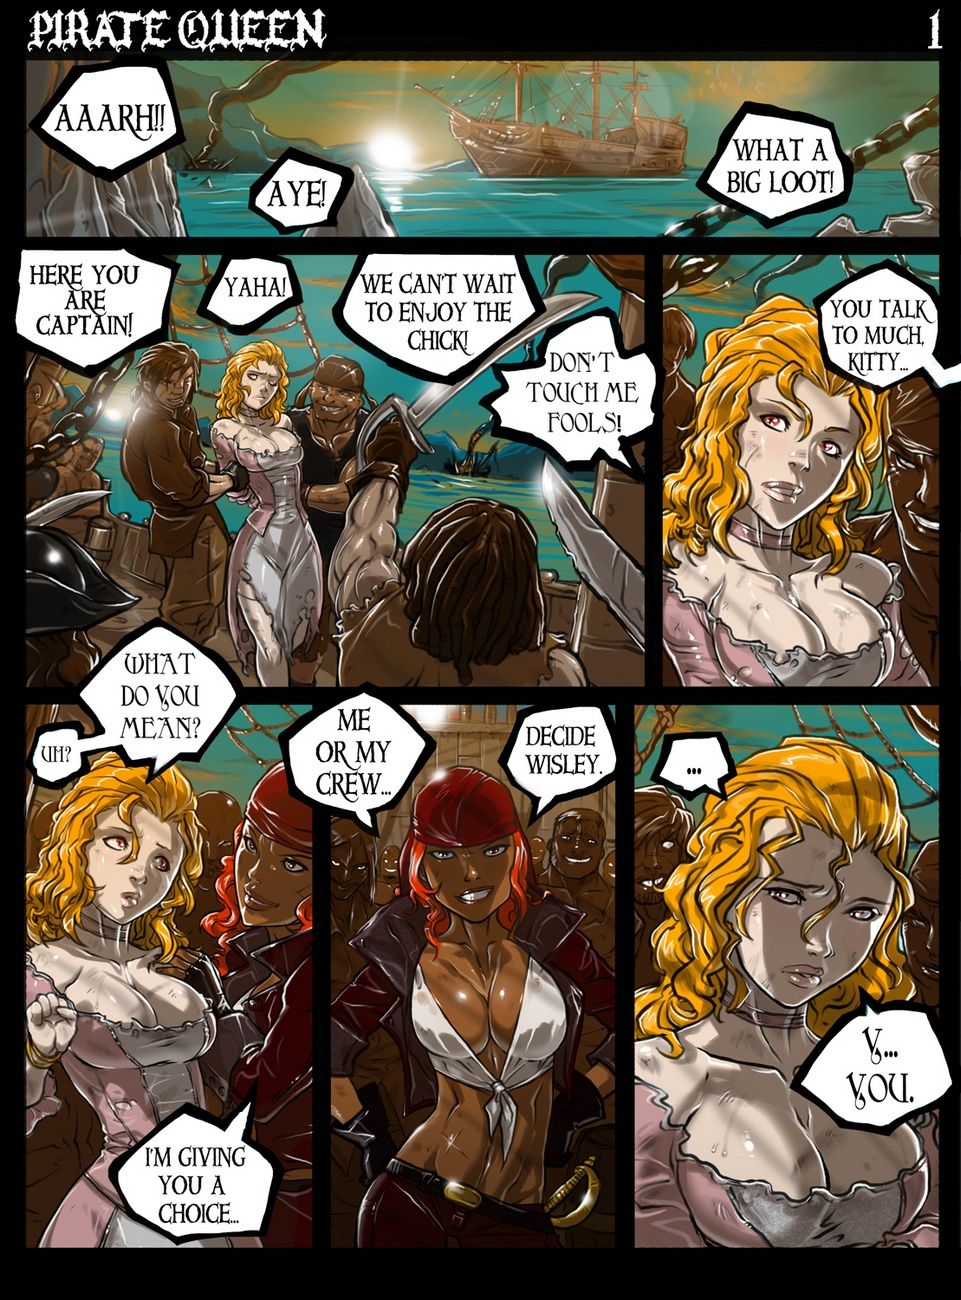 piraat koningin page 1